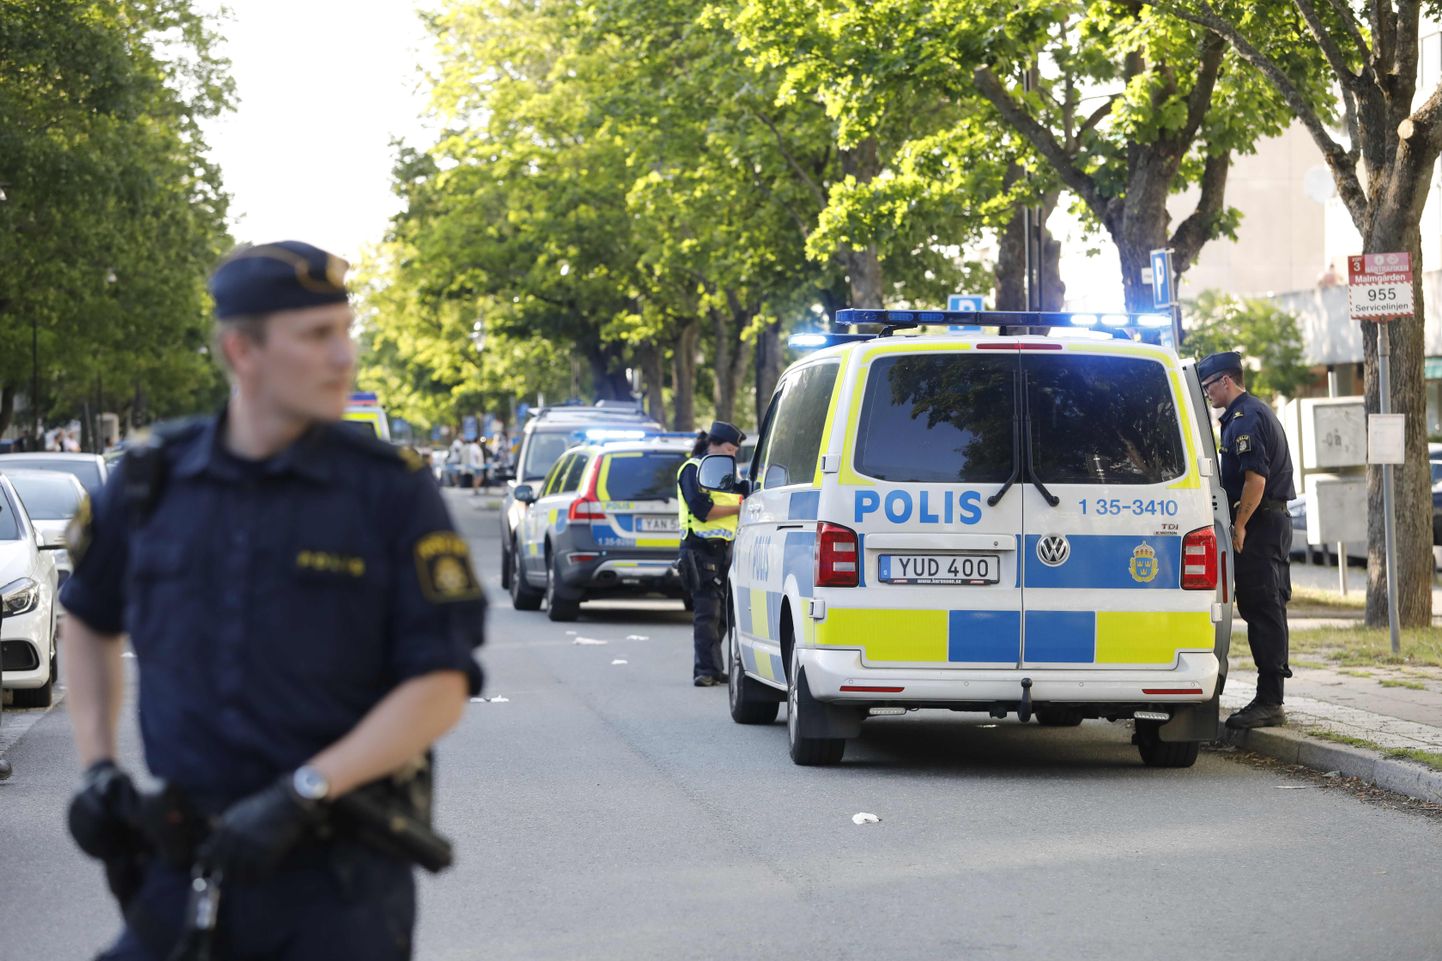 Viimane tulistamine leidis Rootsi pealinnas Stockholmis aset eelmisel pühapäeval ja selles hukkus 20-aastane noormees.